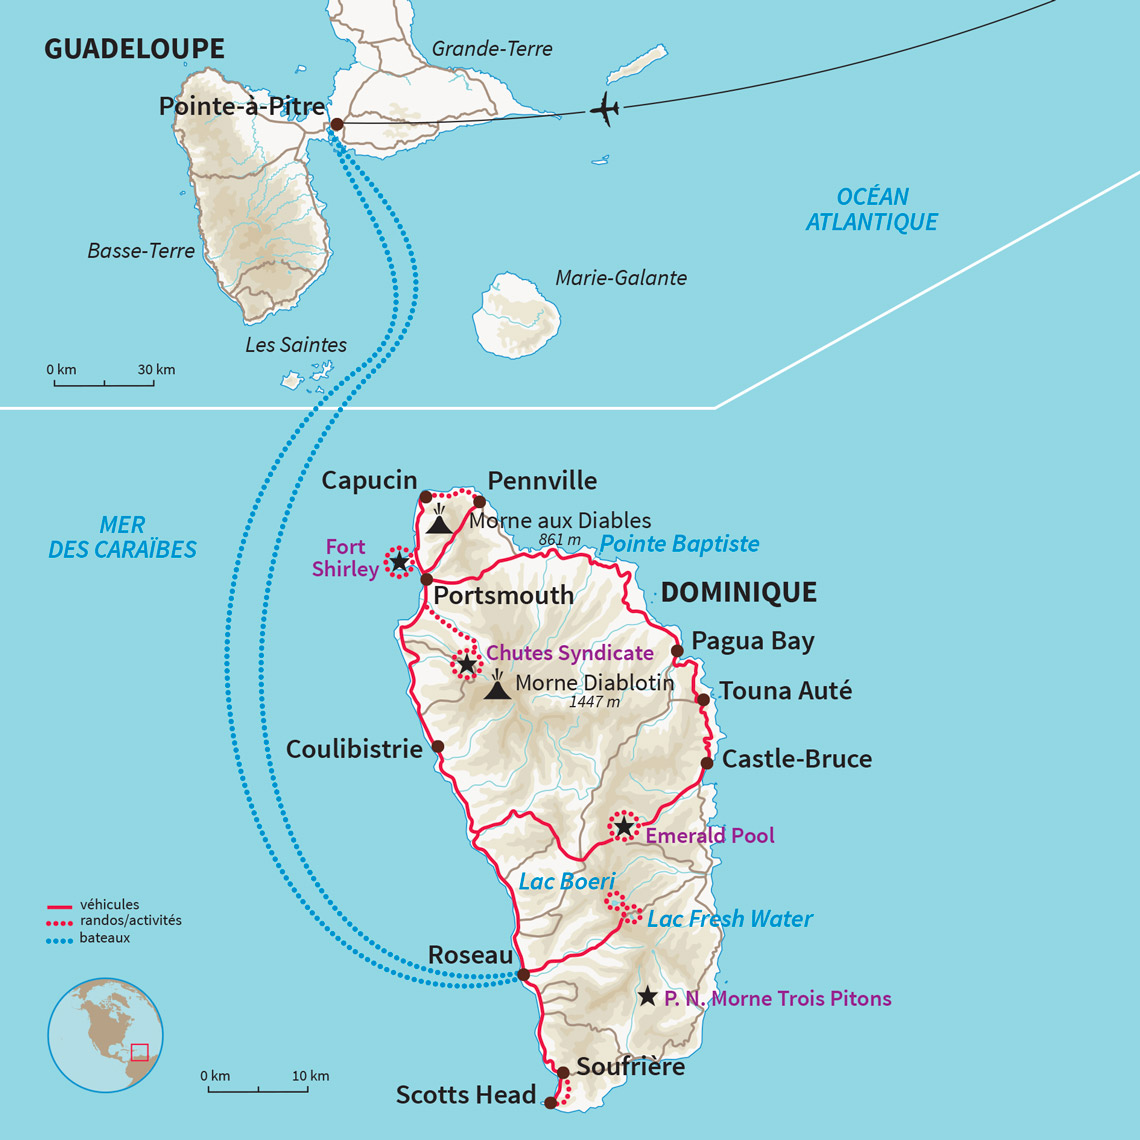 Carte Dominique : La Dominique entre eaux douces et eaux salées